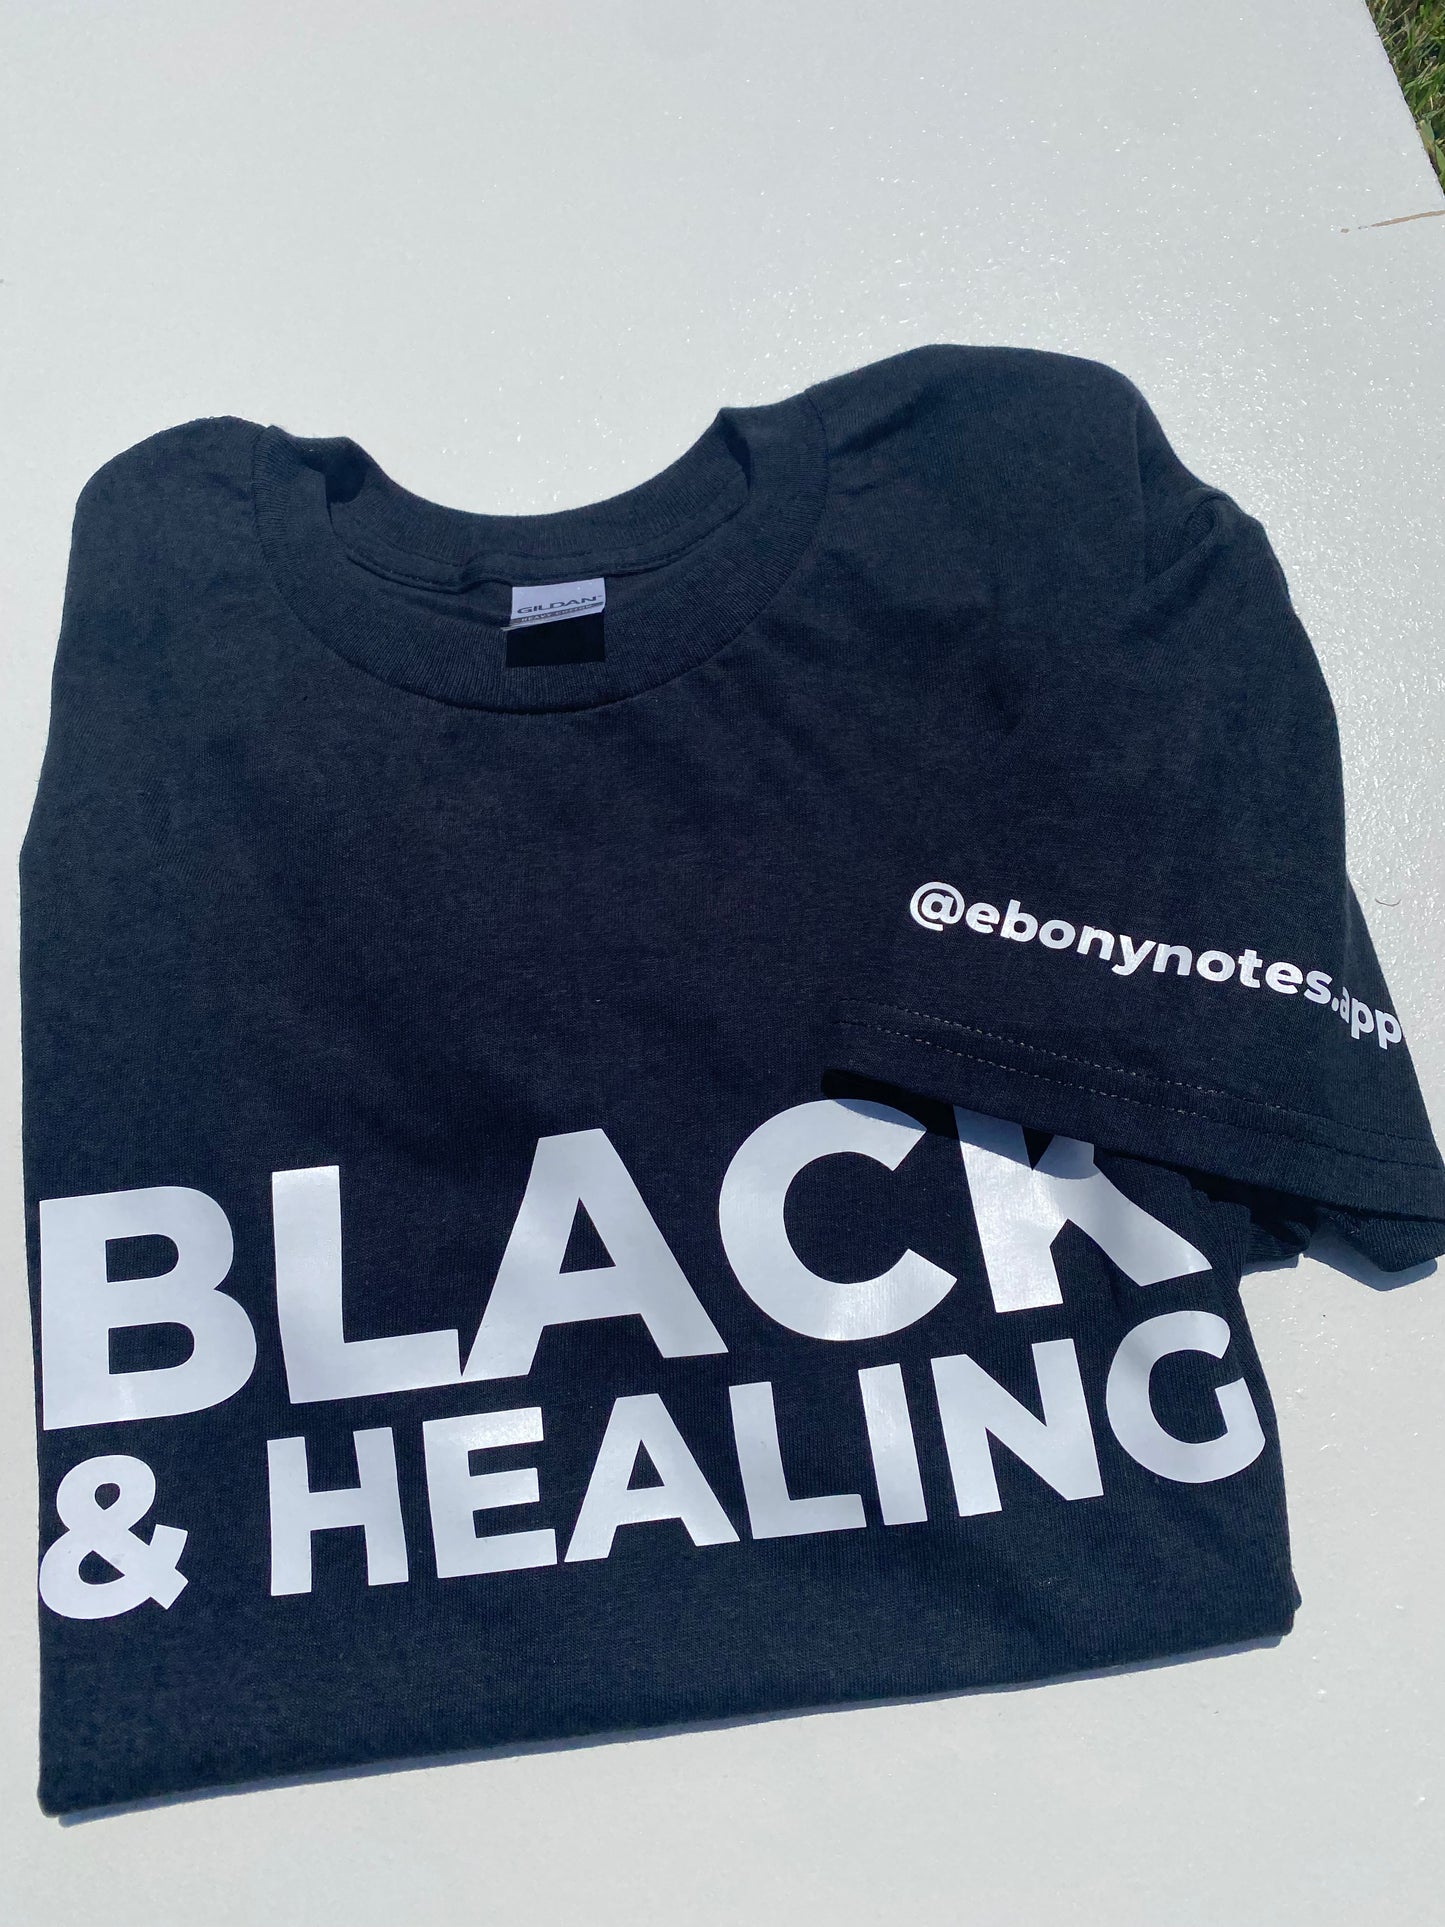 Healing Shirt